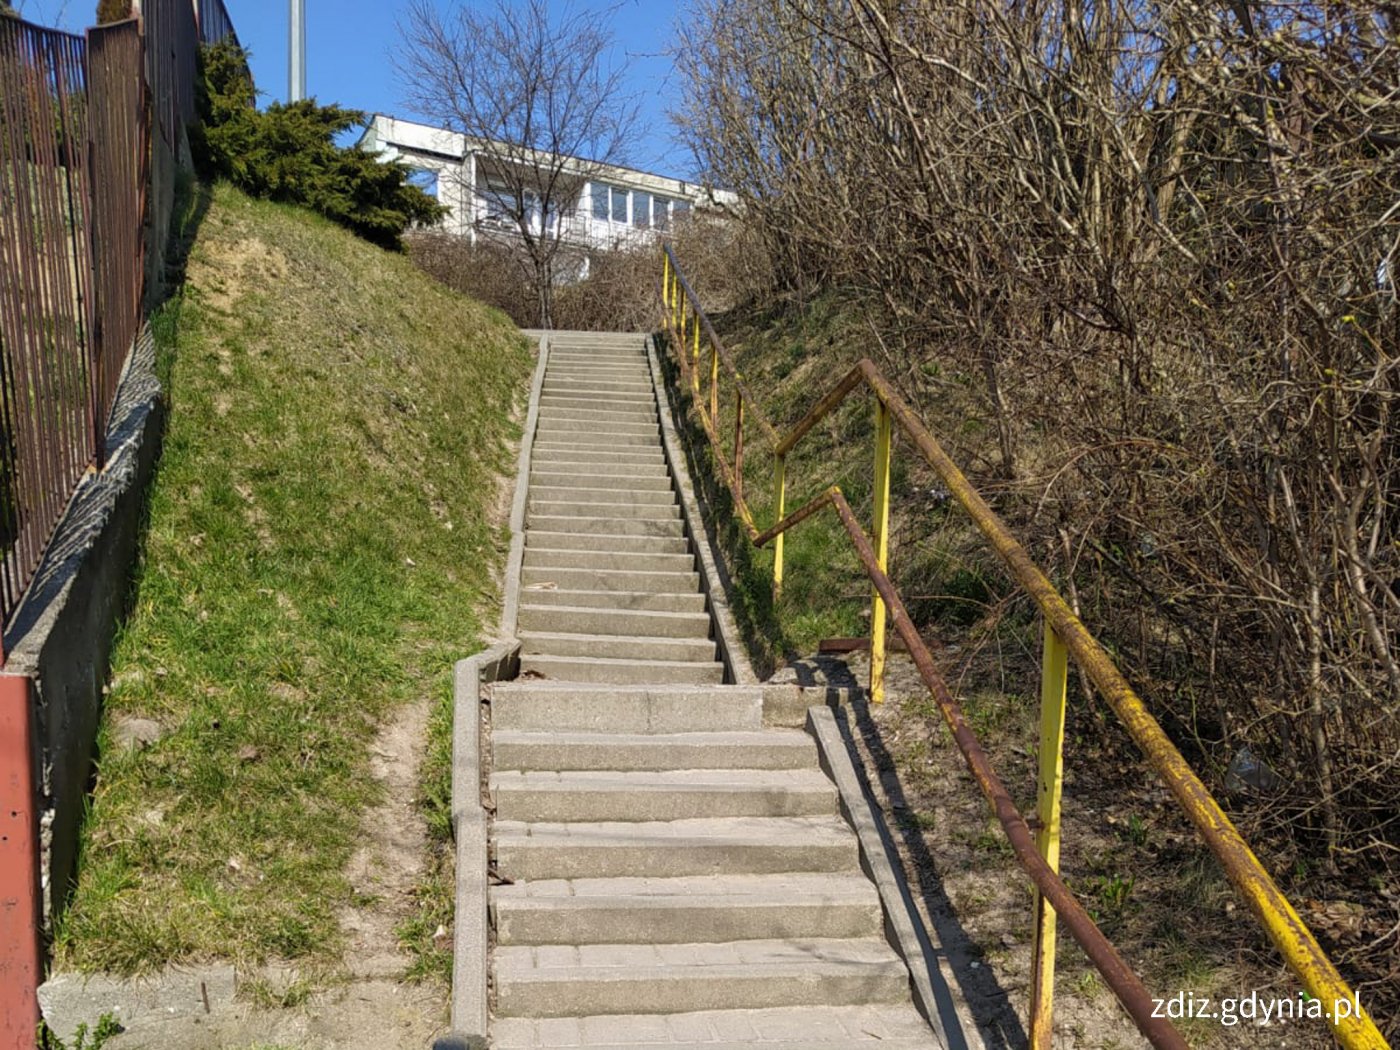 betonowe schody z żółtą barierką, widoczna zieleń